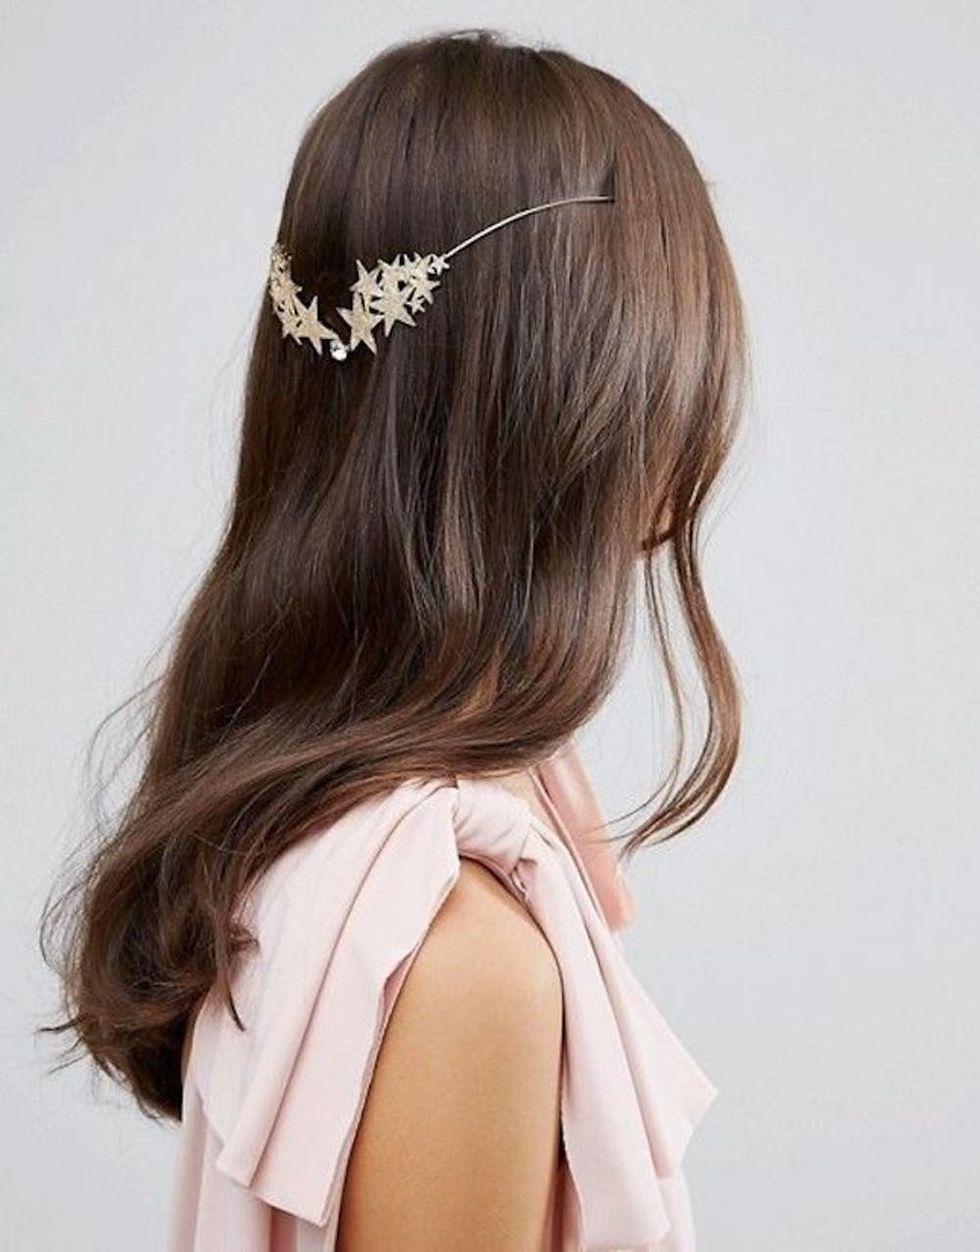 Sienna Spectrum Headband  Spring hair accessories, Spring hairstyles, Hair  acessories